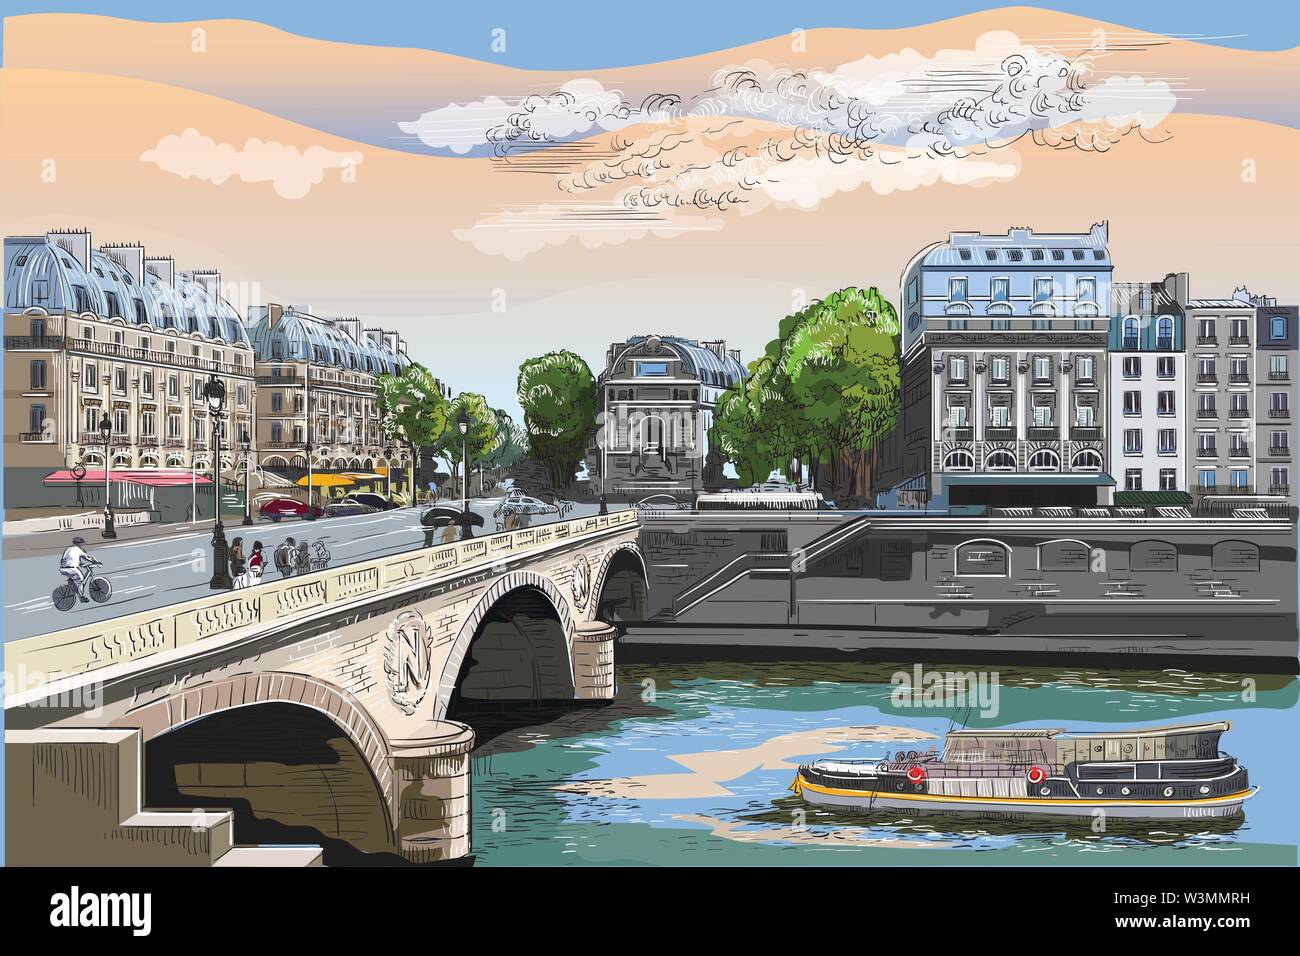 Bunte Vektor hand Zeichnung Abbildung von Pont Saint Michel Brücke, Wahrzeichen von Paris, Frankreich. Stadtbild mit Saint Michel Brücke und Pariser Straße. Stock Vektor